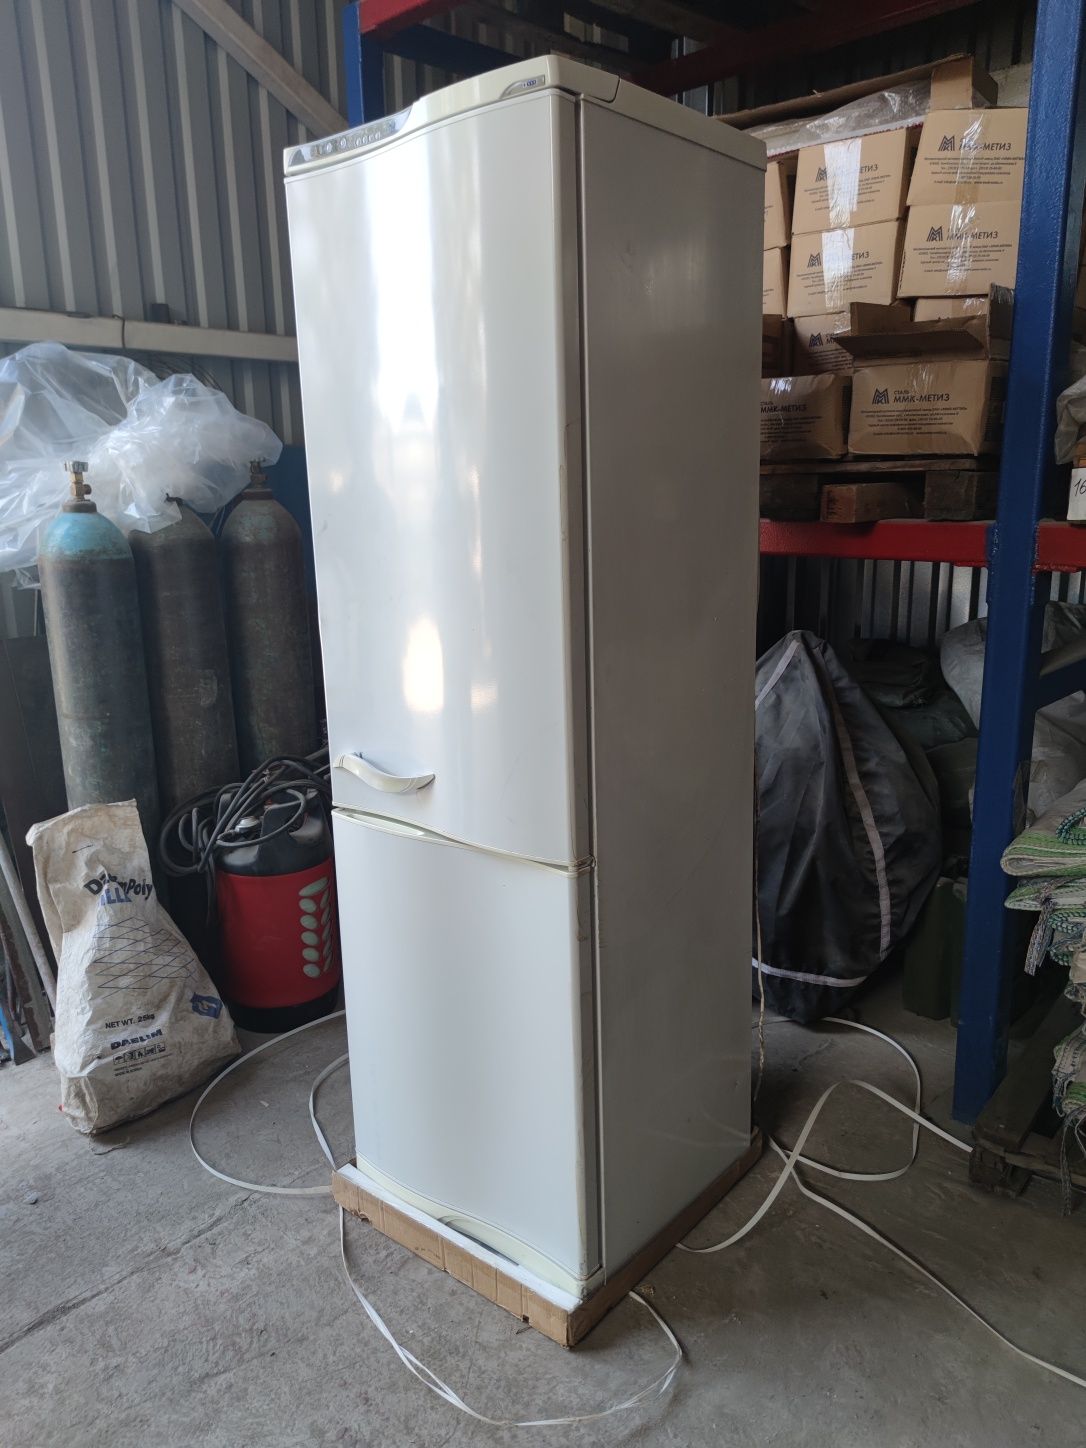 Продам холодильник Атлант двухкамерный за 80.000 тысяч посёлок Красина